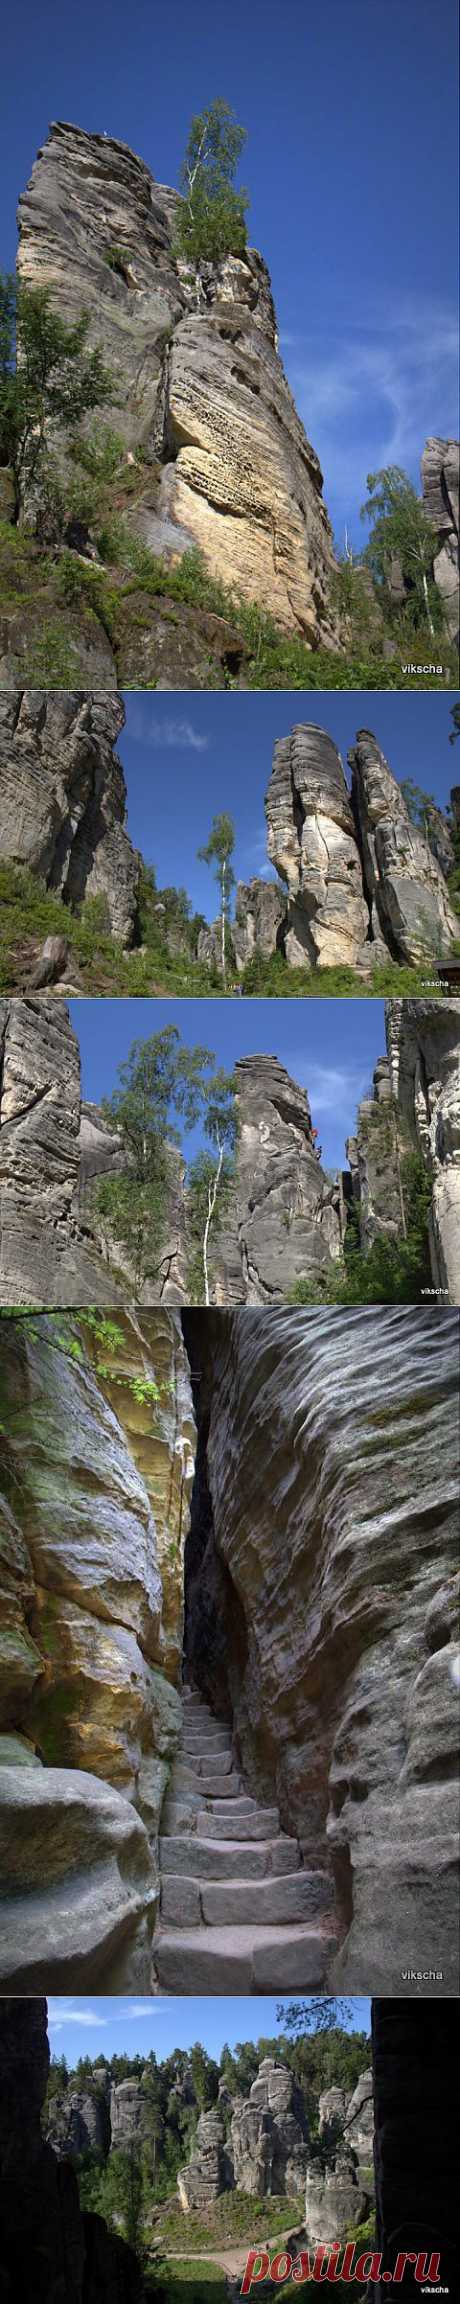 Праховские скалы – уникальное творение природы (Чехия) | ЛЮБИМЫЕ ФОТО